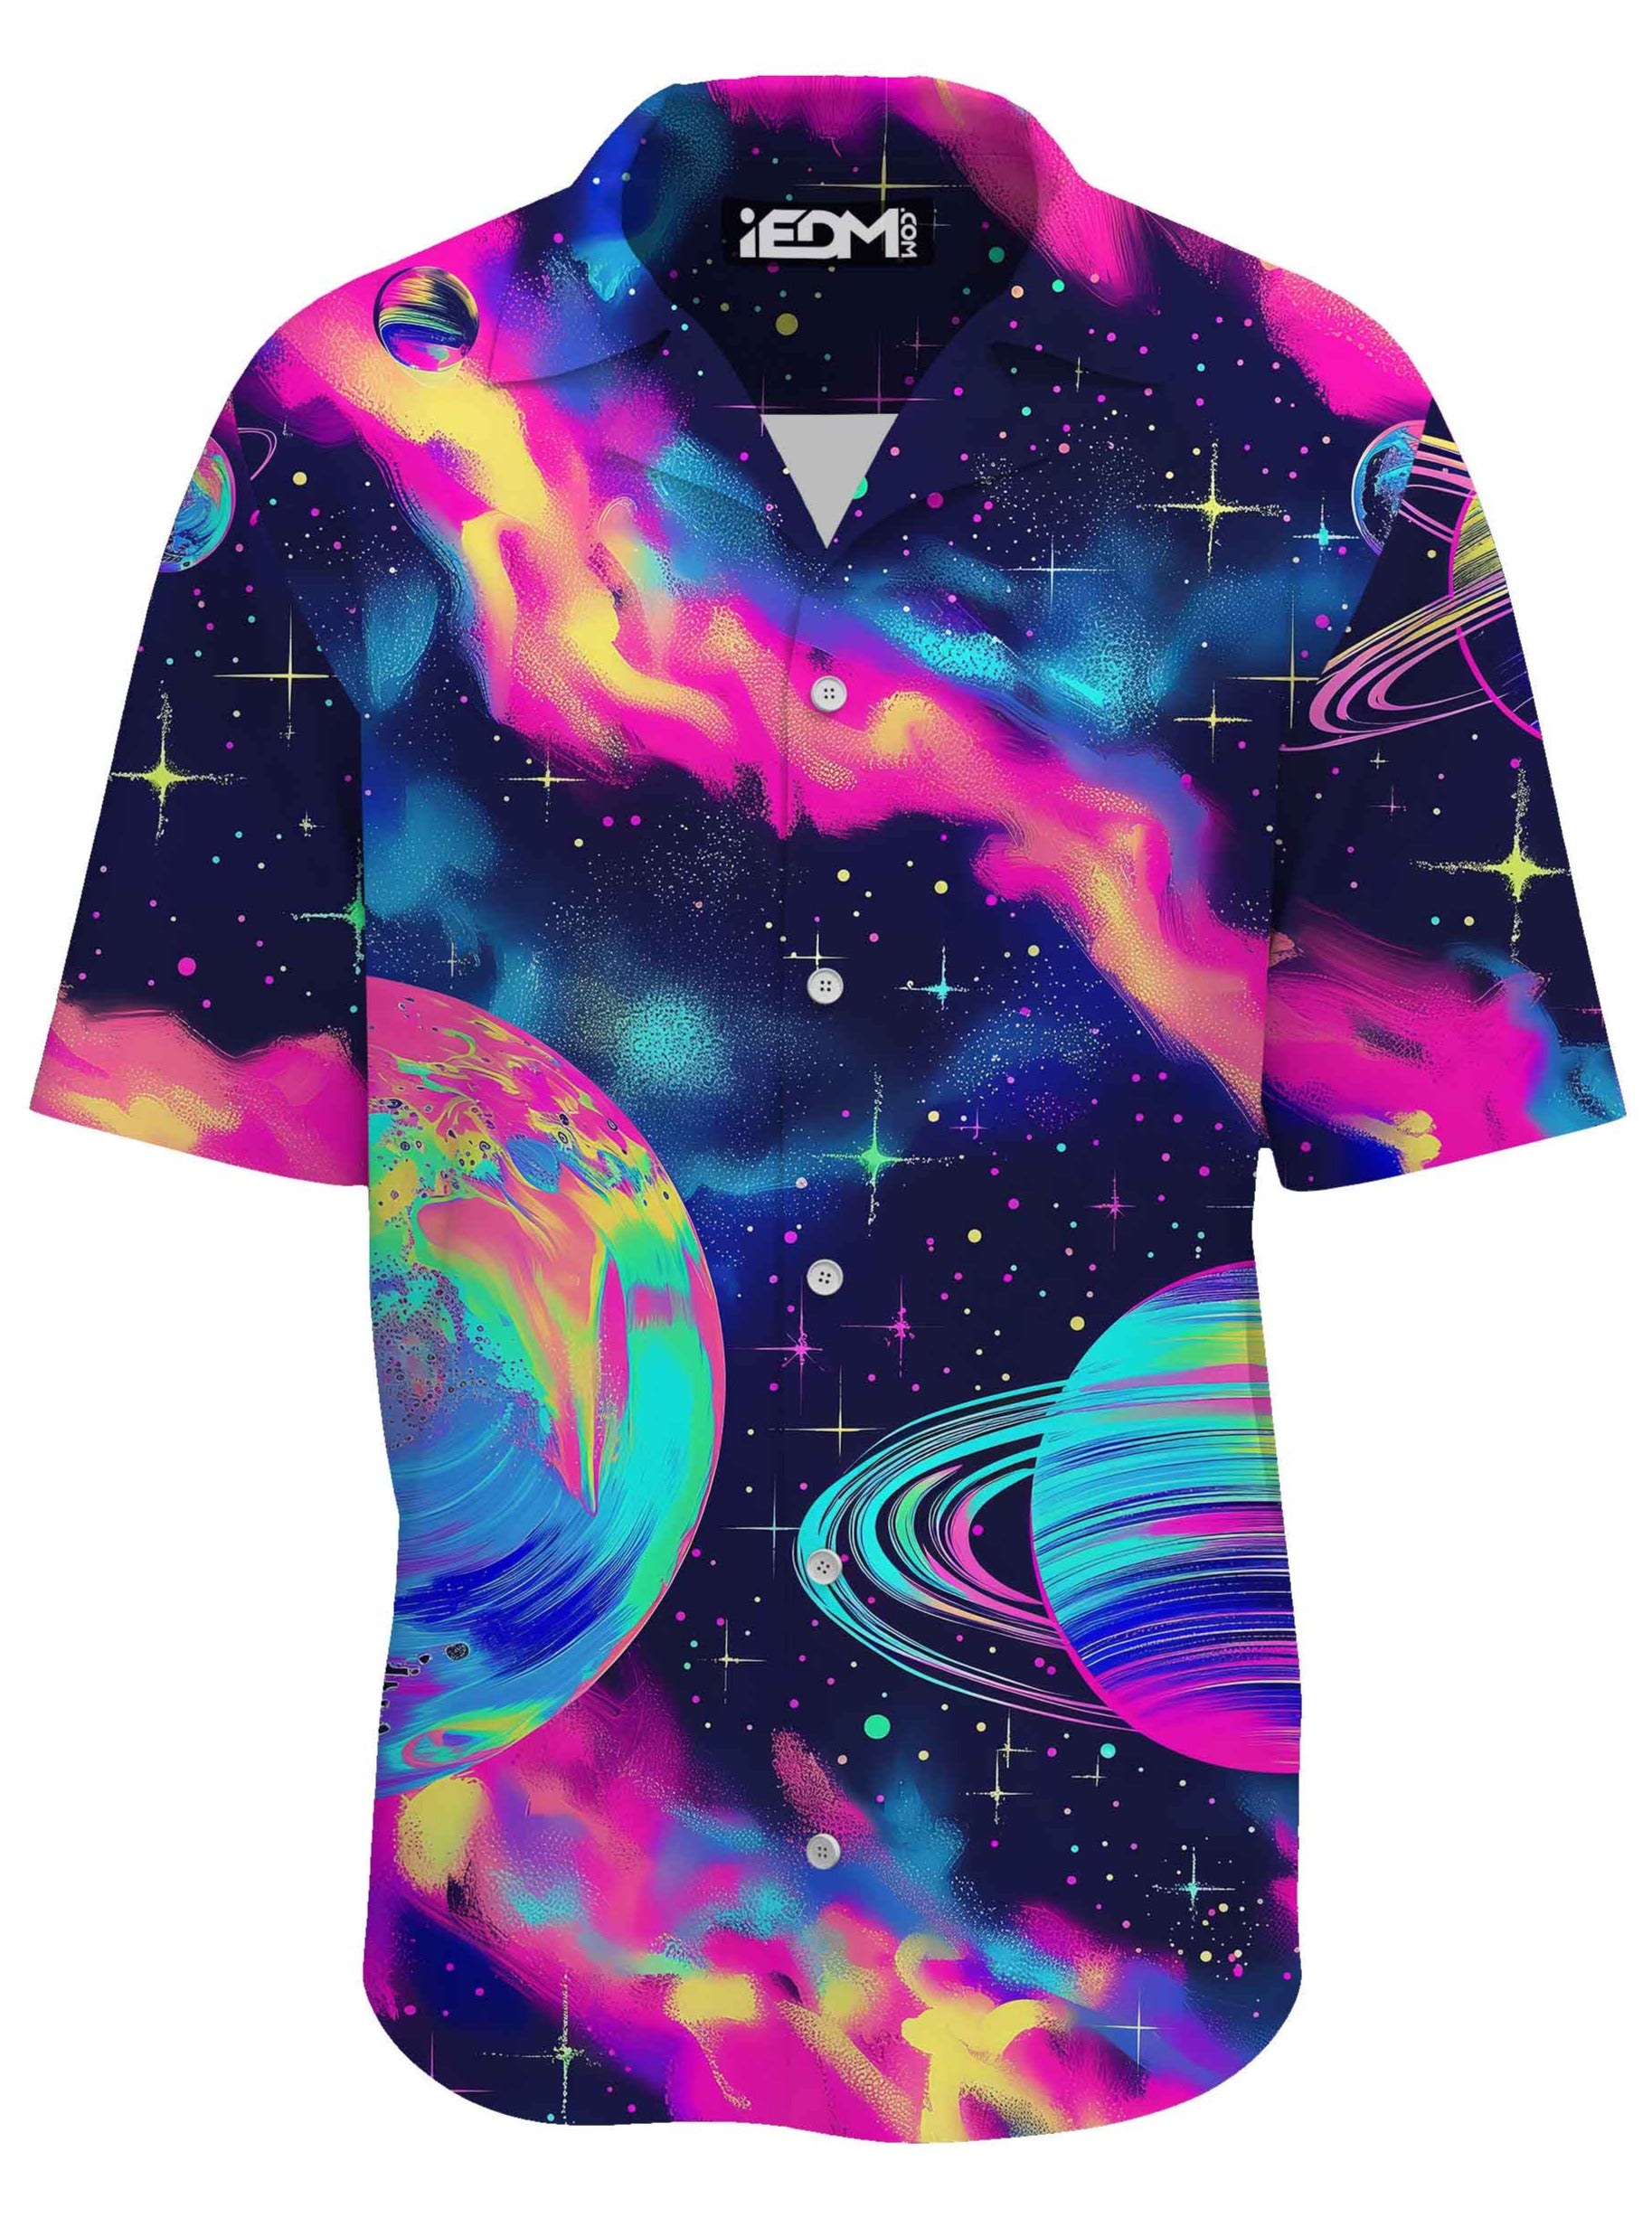 Planetary Hive Mind Lounge Shirt, iEDM, | iEDM